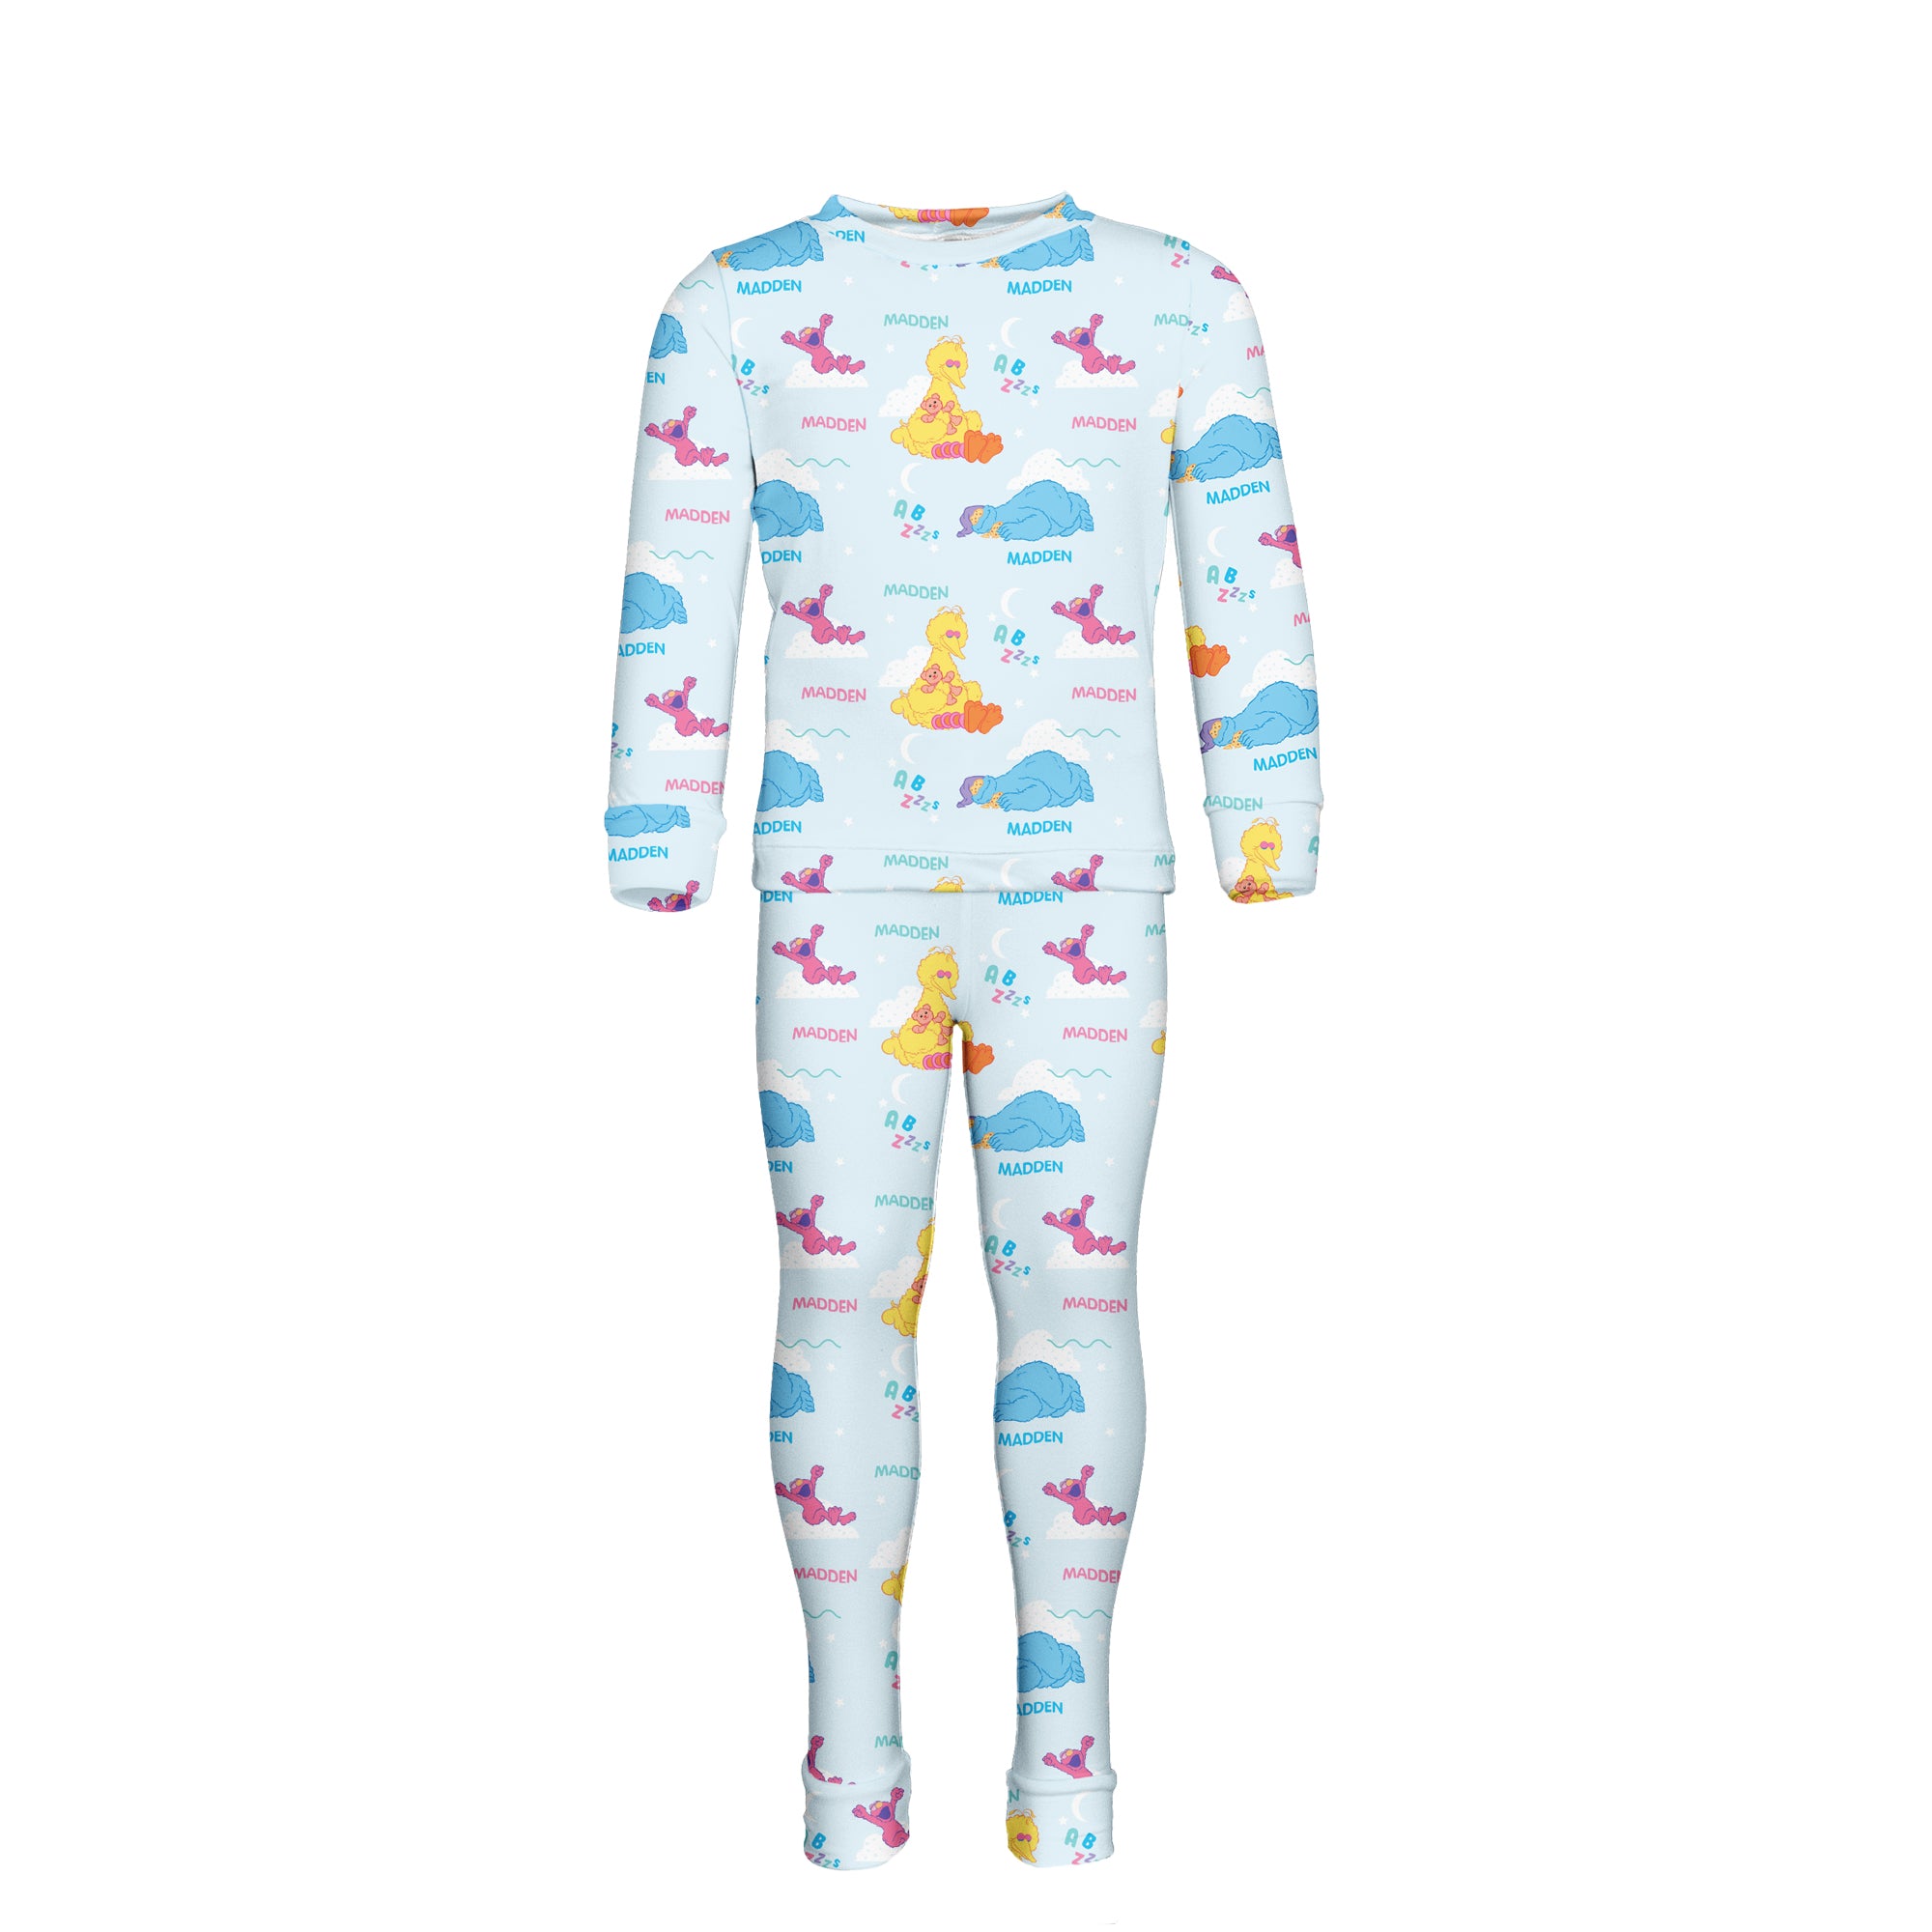 Sesame Street - Personalized Pyjamas